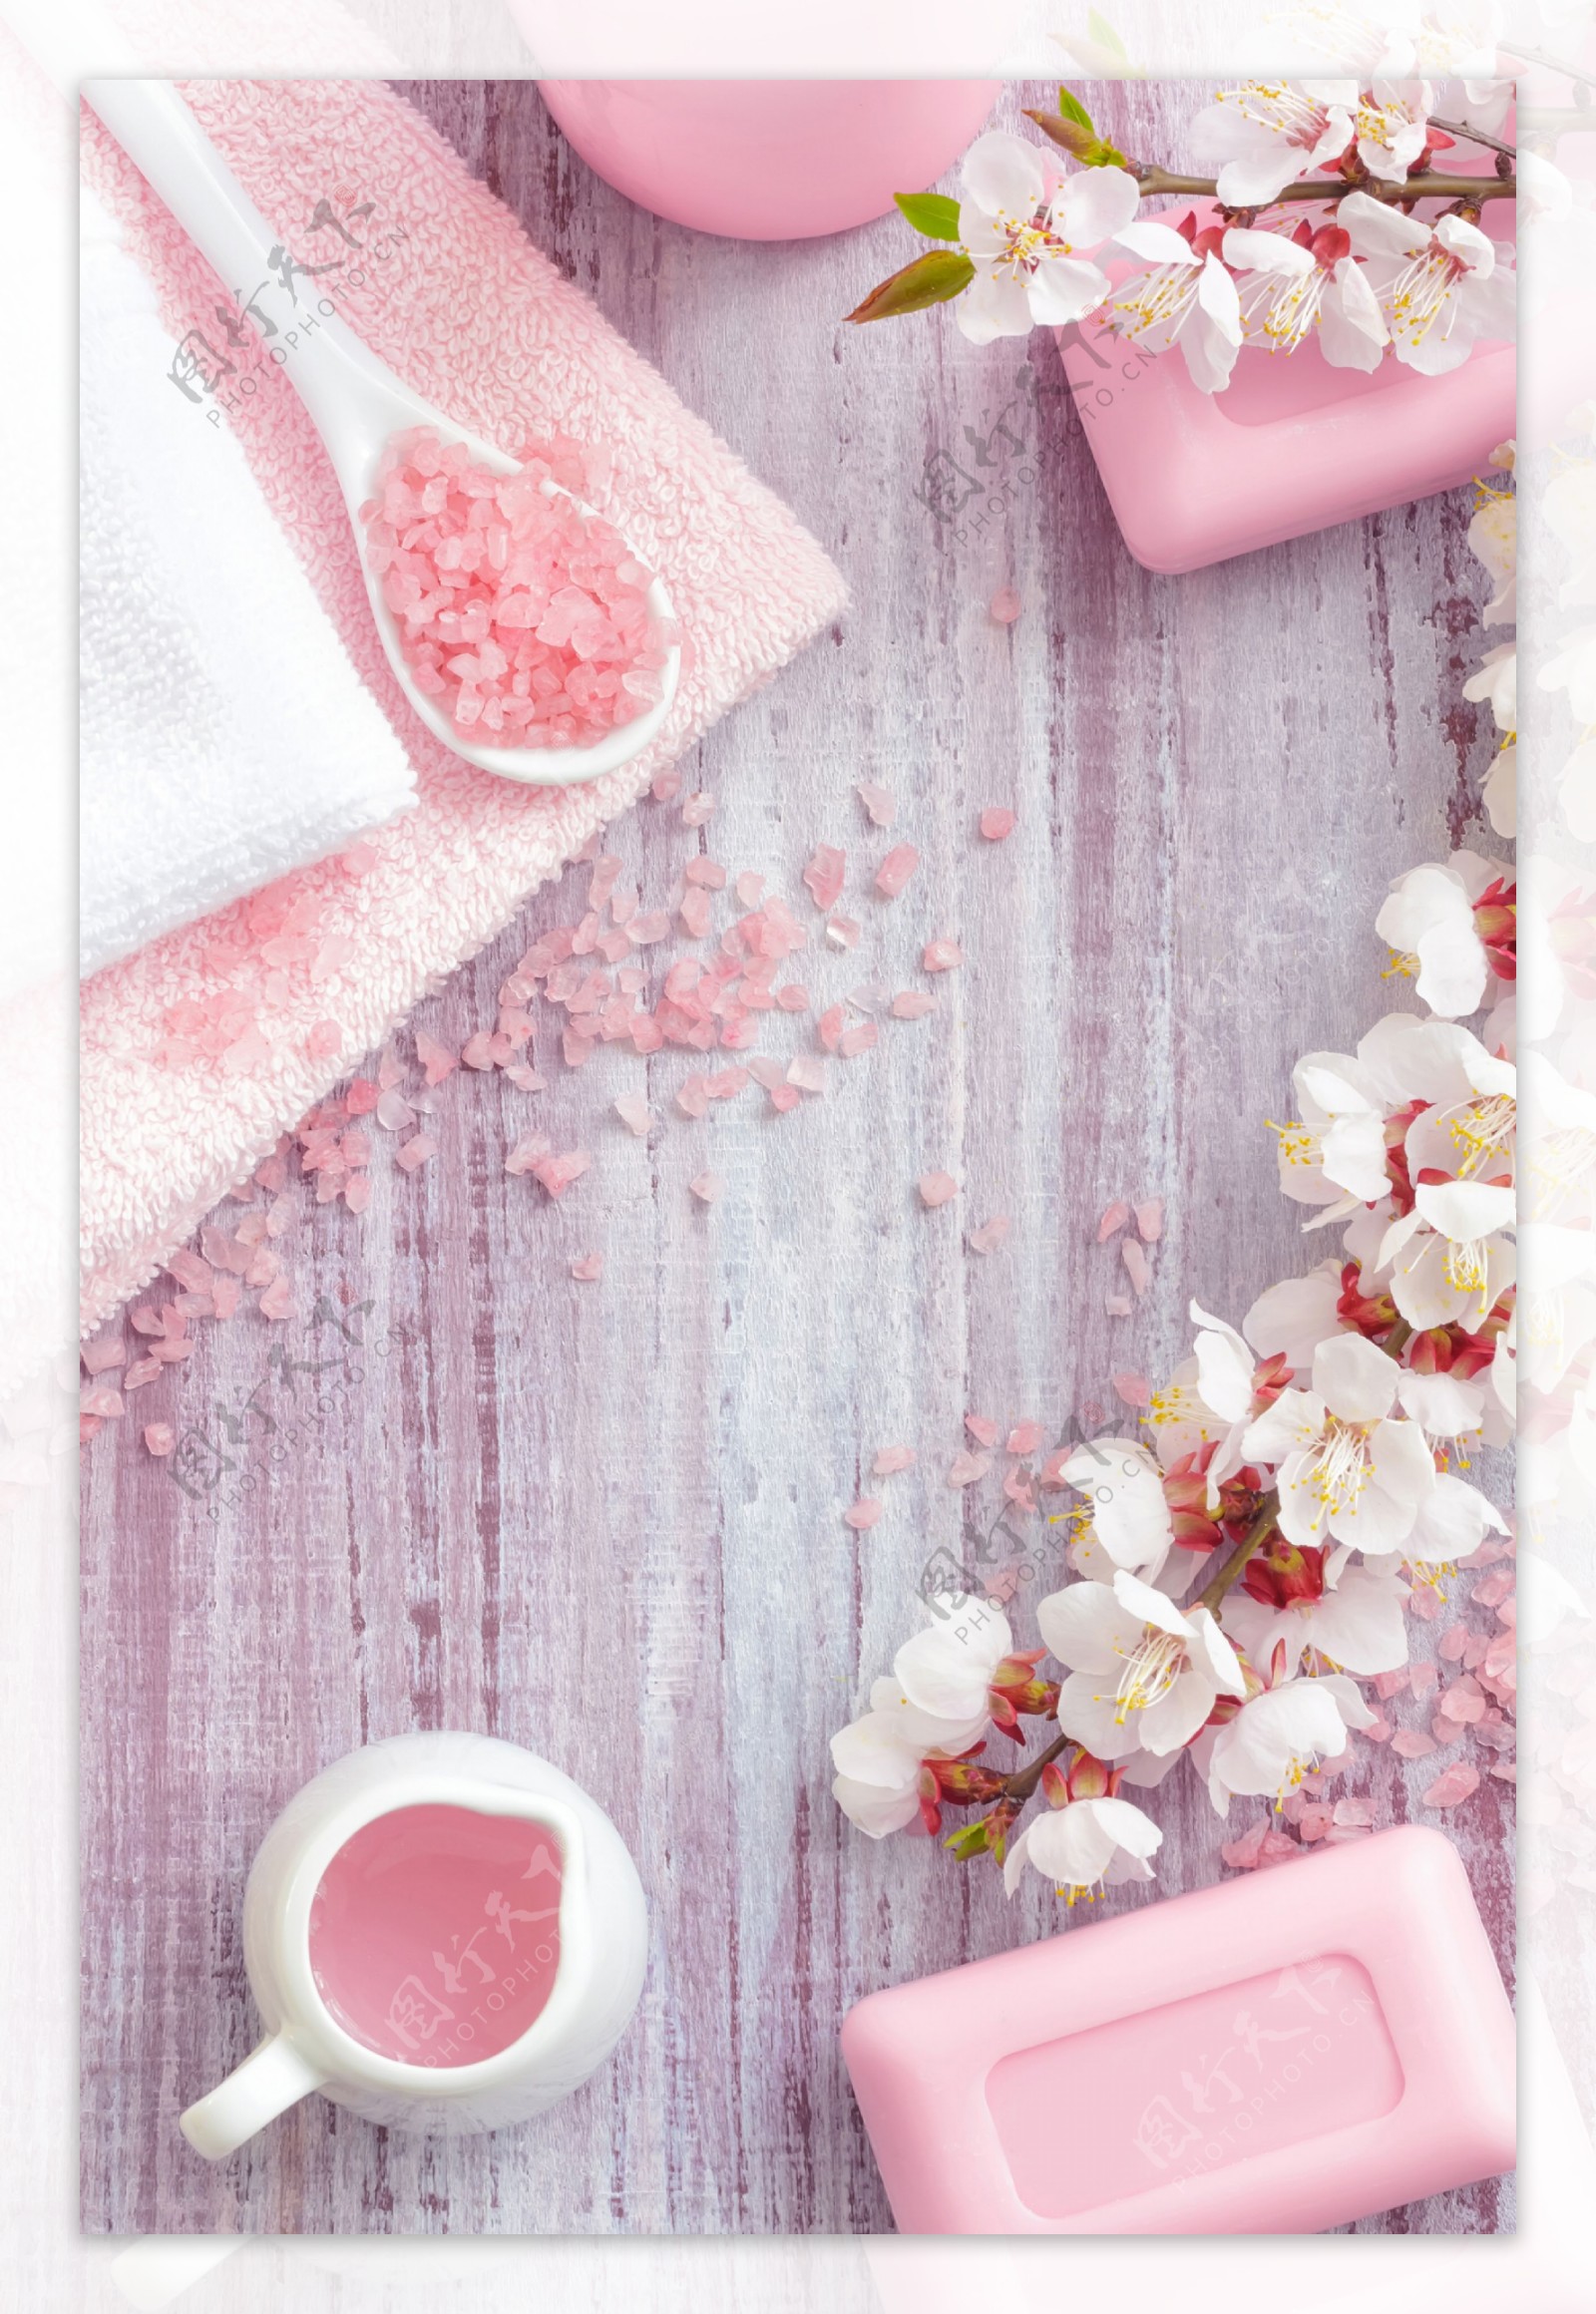 Spa水疗浴盐和花朵香皂图片